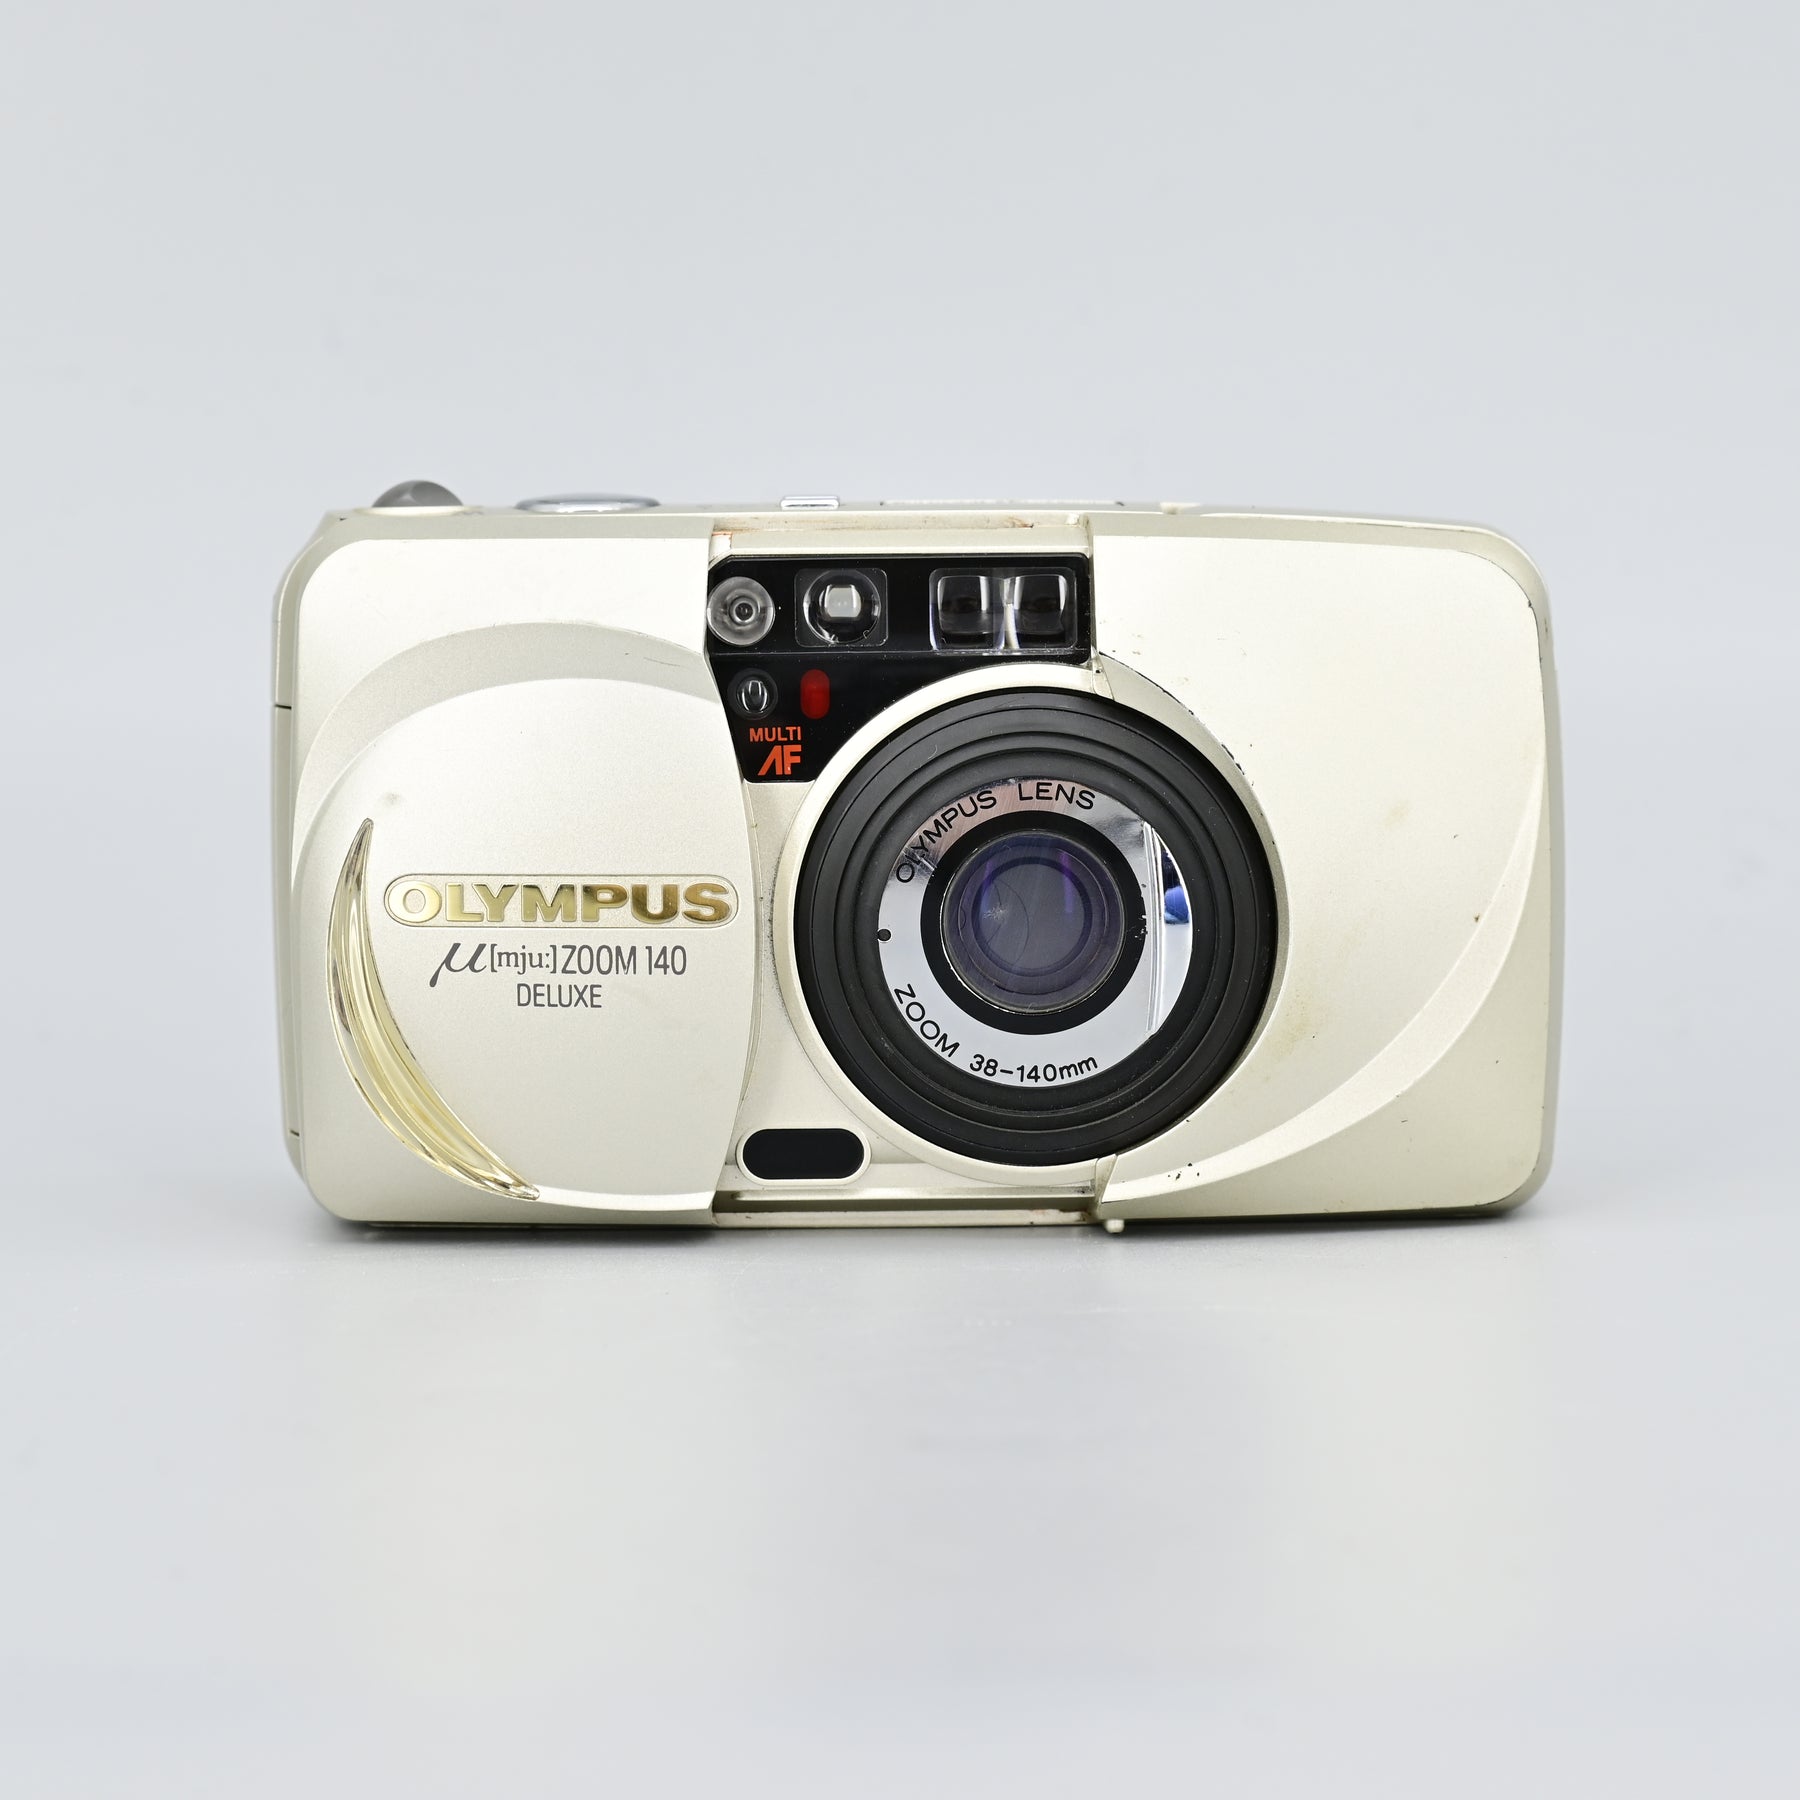 OLYMPUS mju ZOOM 140 コンパクトフィルムカメラ-